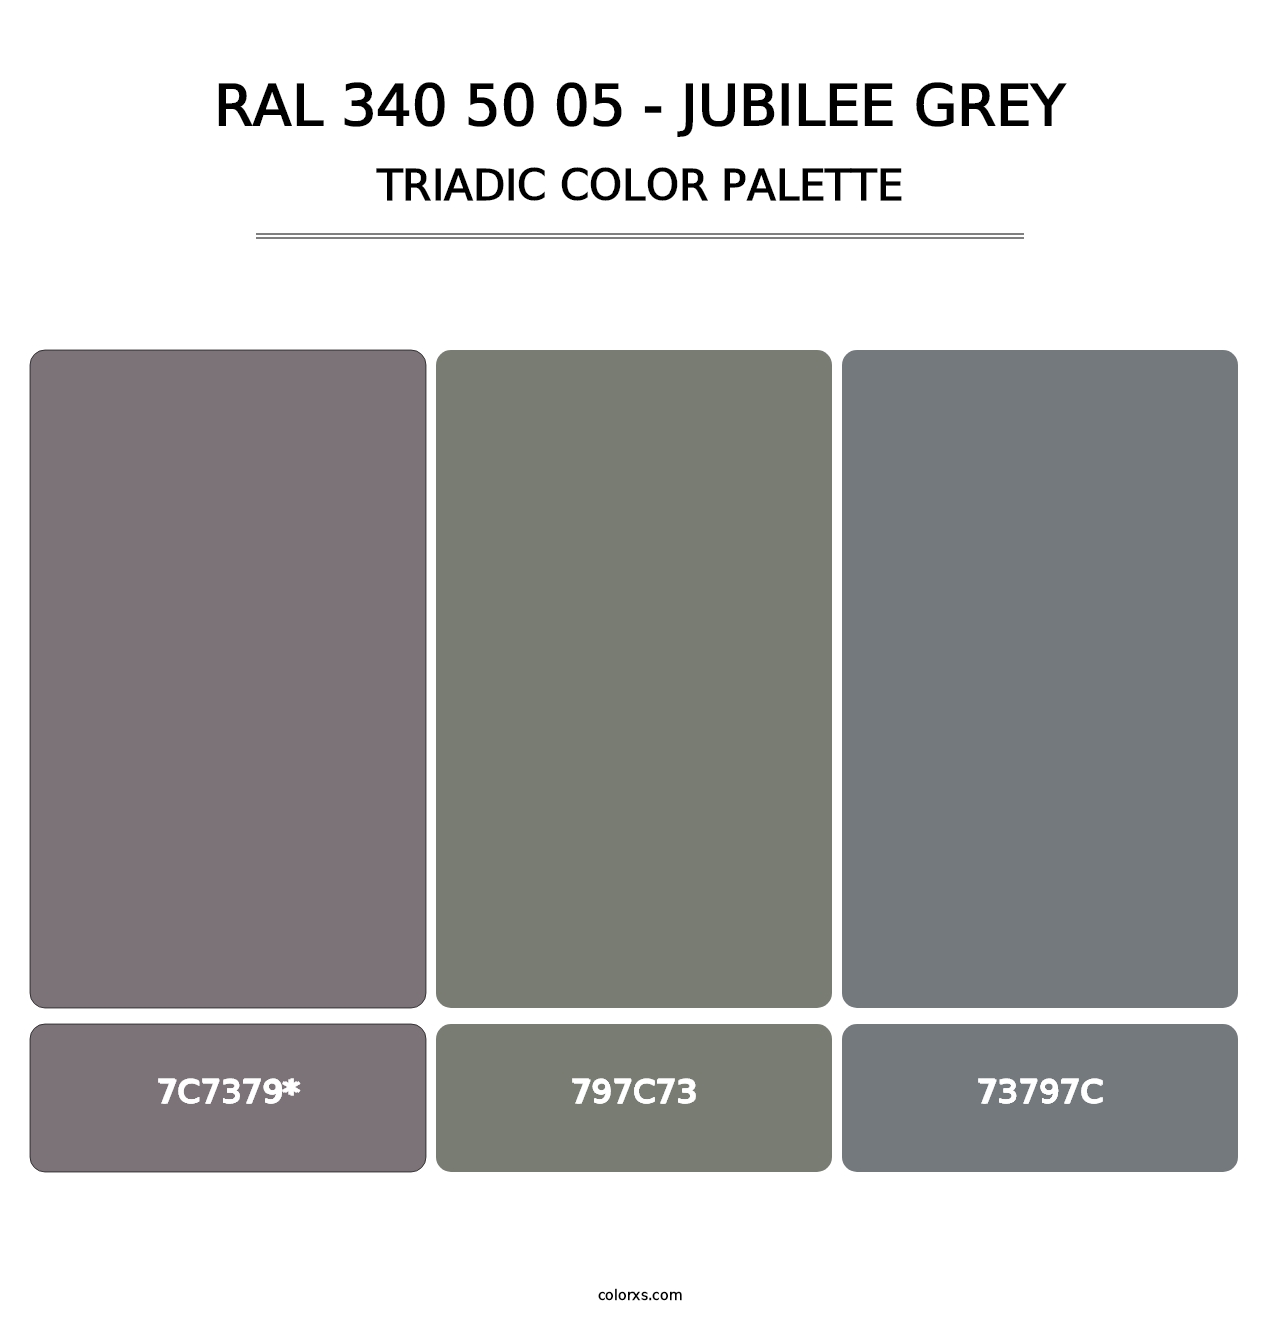 RAL 340 50 05 - Jubilee Grey - Triadic Color Palette